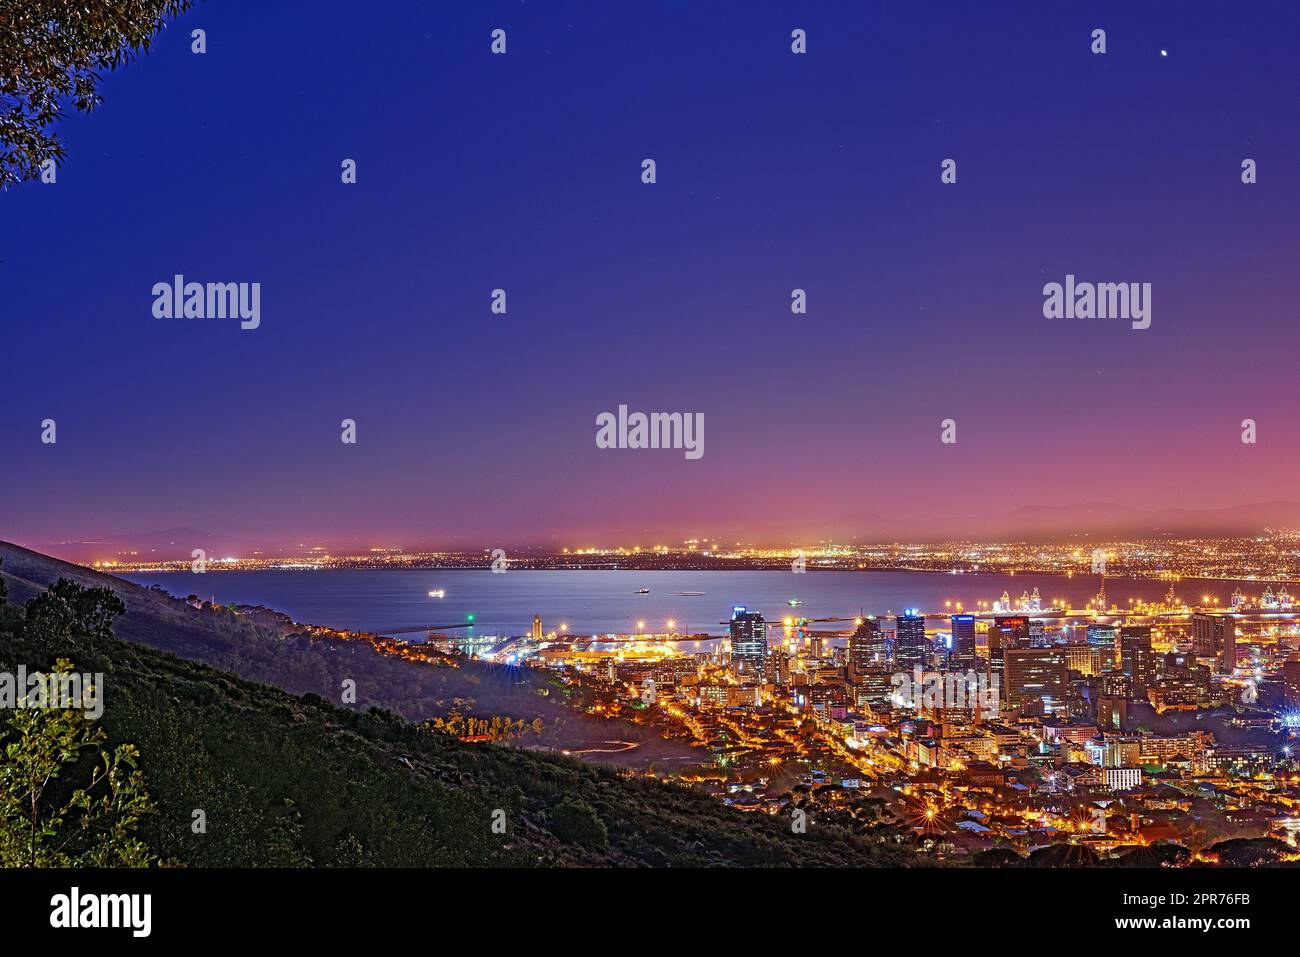 Signal Hill a città del Capo, in Sudafrica, con il copyspace sullo sfondo scuro del cielo notturno e la vista di una città costiera. Paesaggio panoramico panoramico di luci che illuminano uno skyline urbano lungo il mare Foto Stock